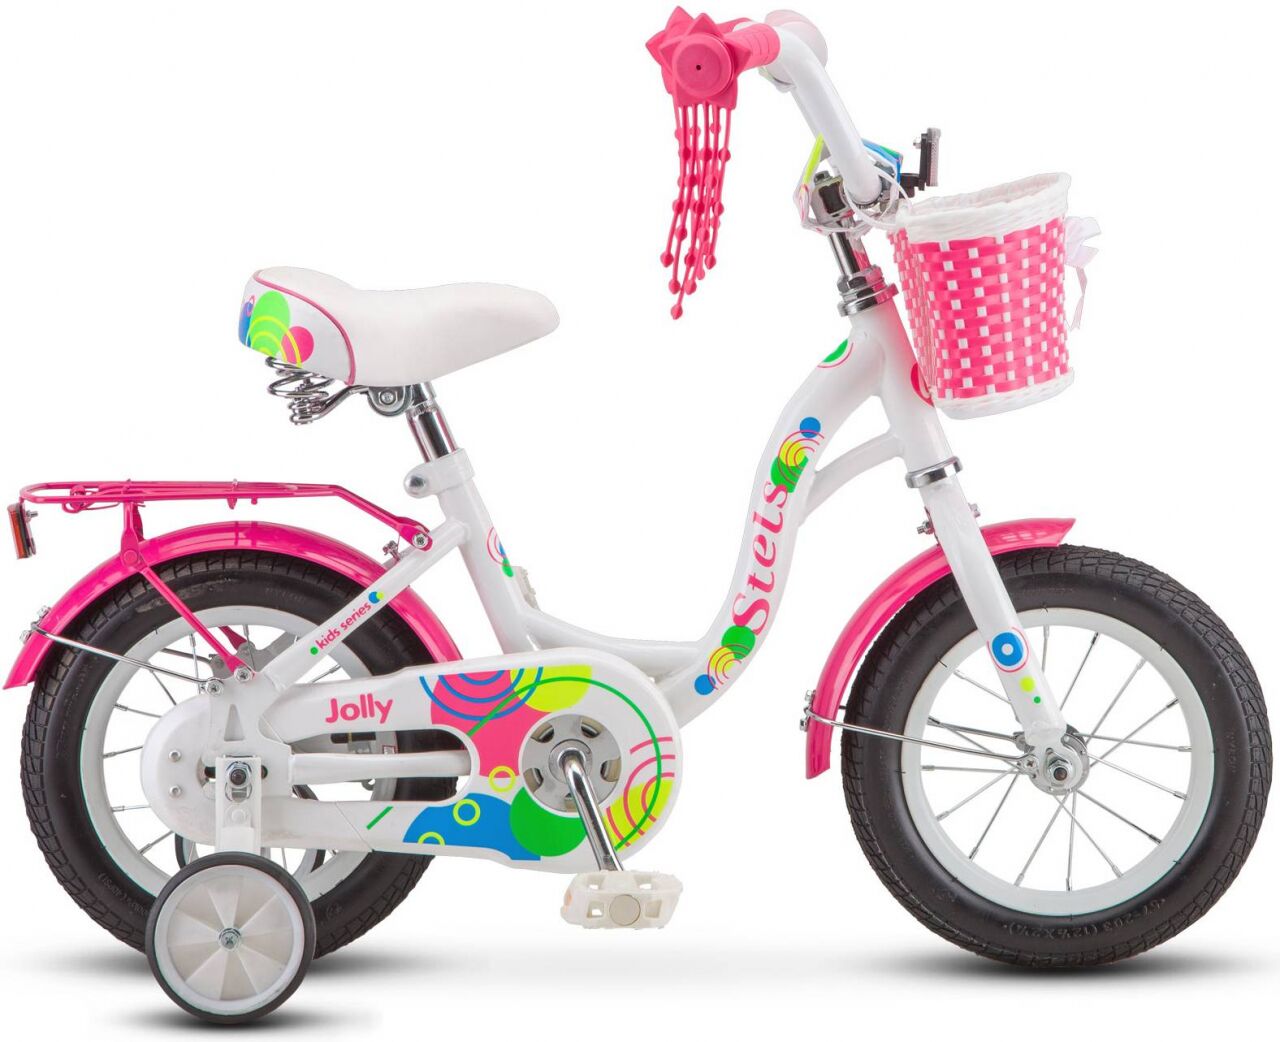 Детский велосипед Stels Jolly 12 V010 (белый/розовый, 2020)